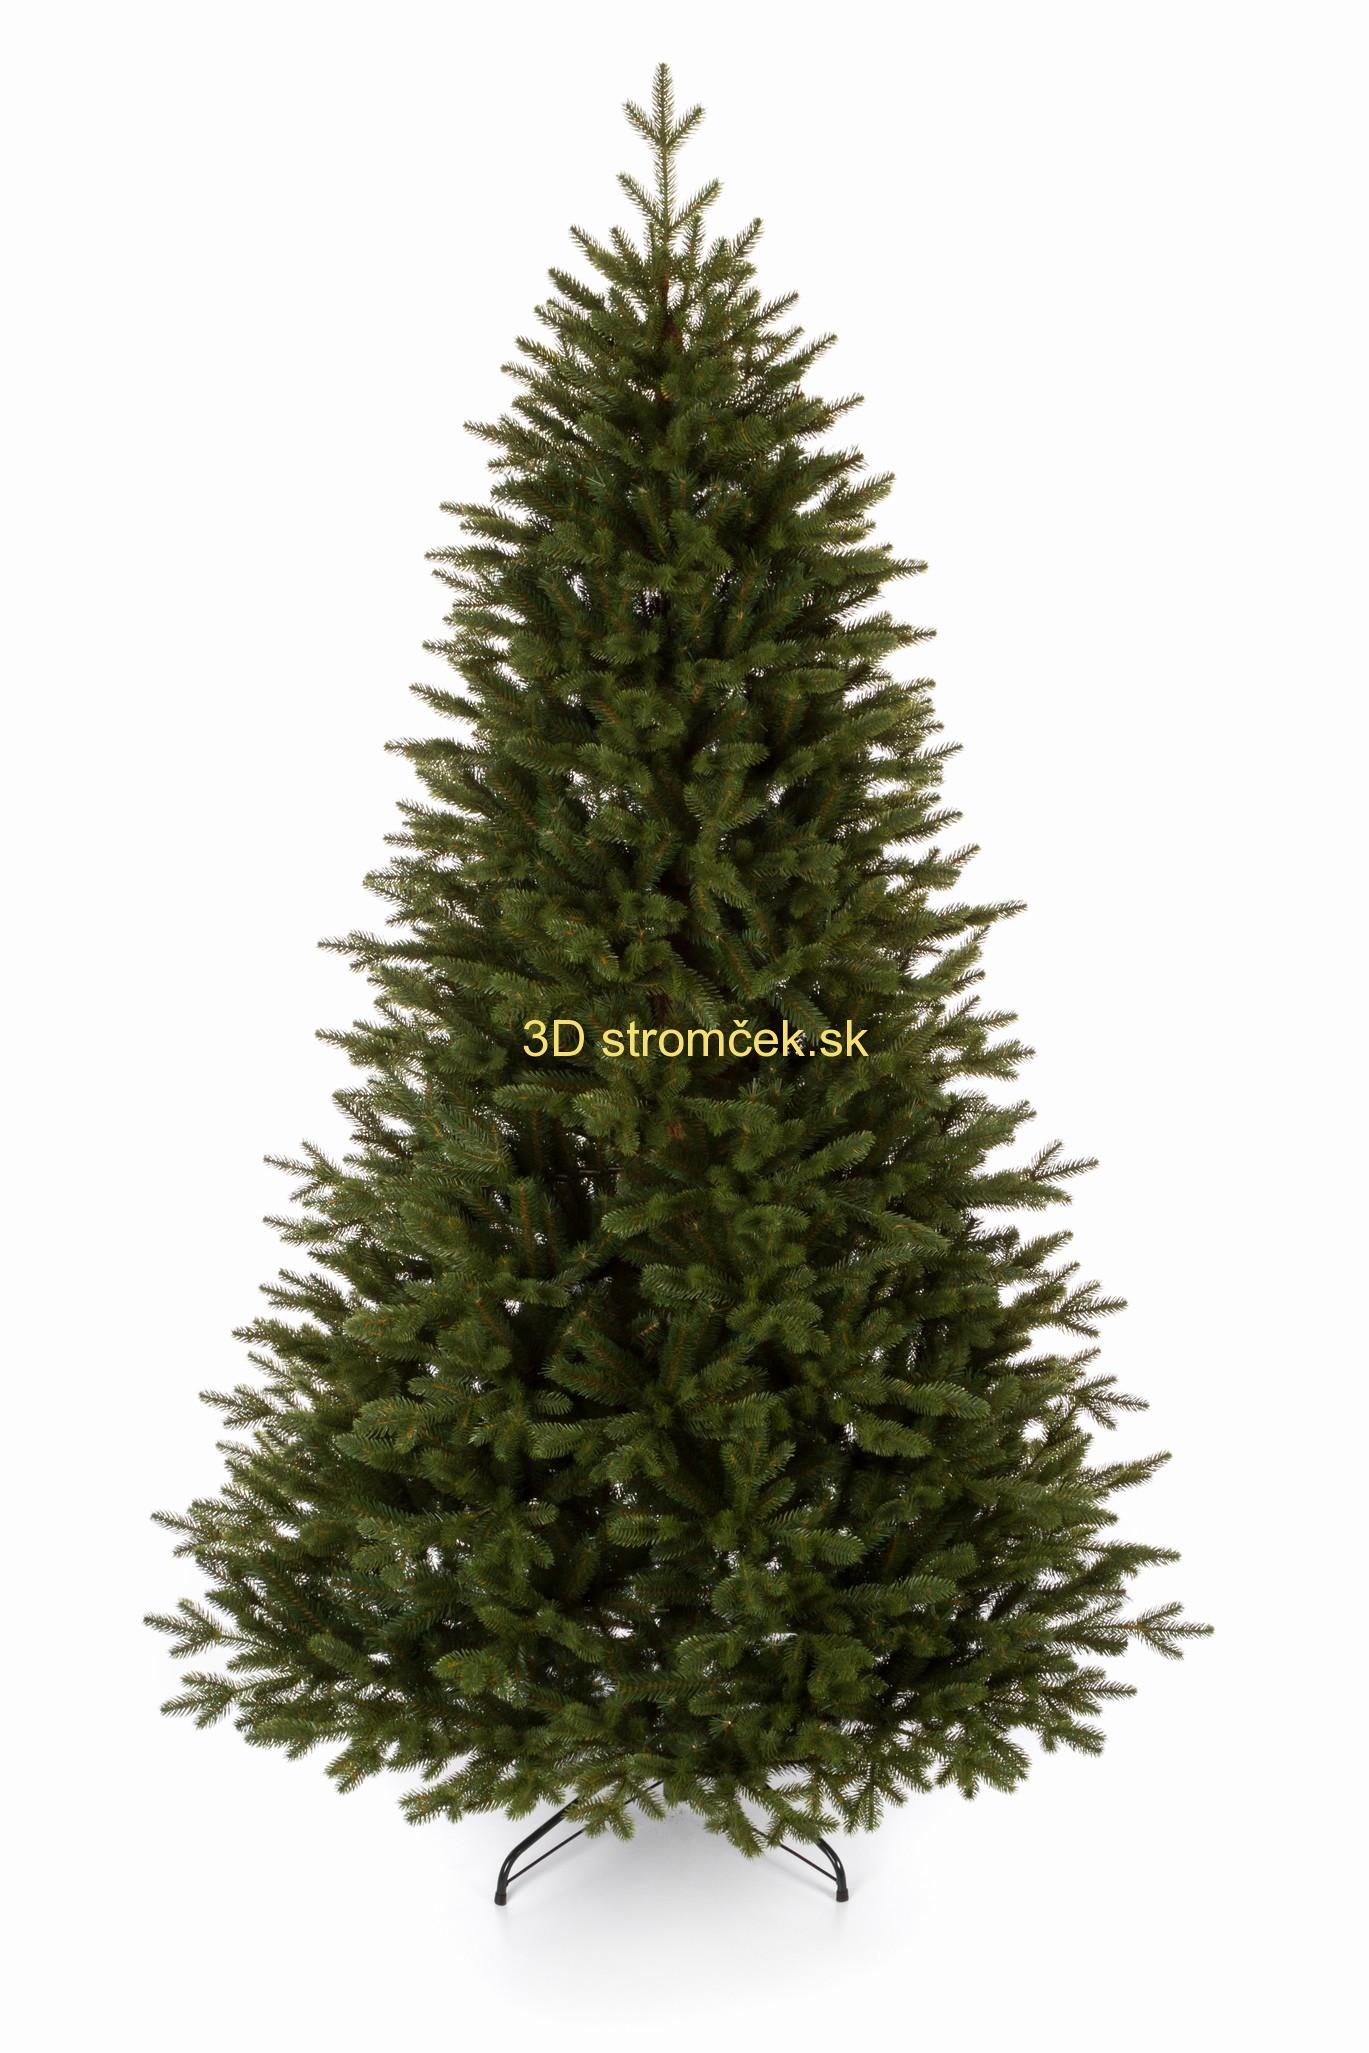 Umelý stromček 3D Smrek Karpatský 210cm